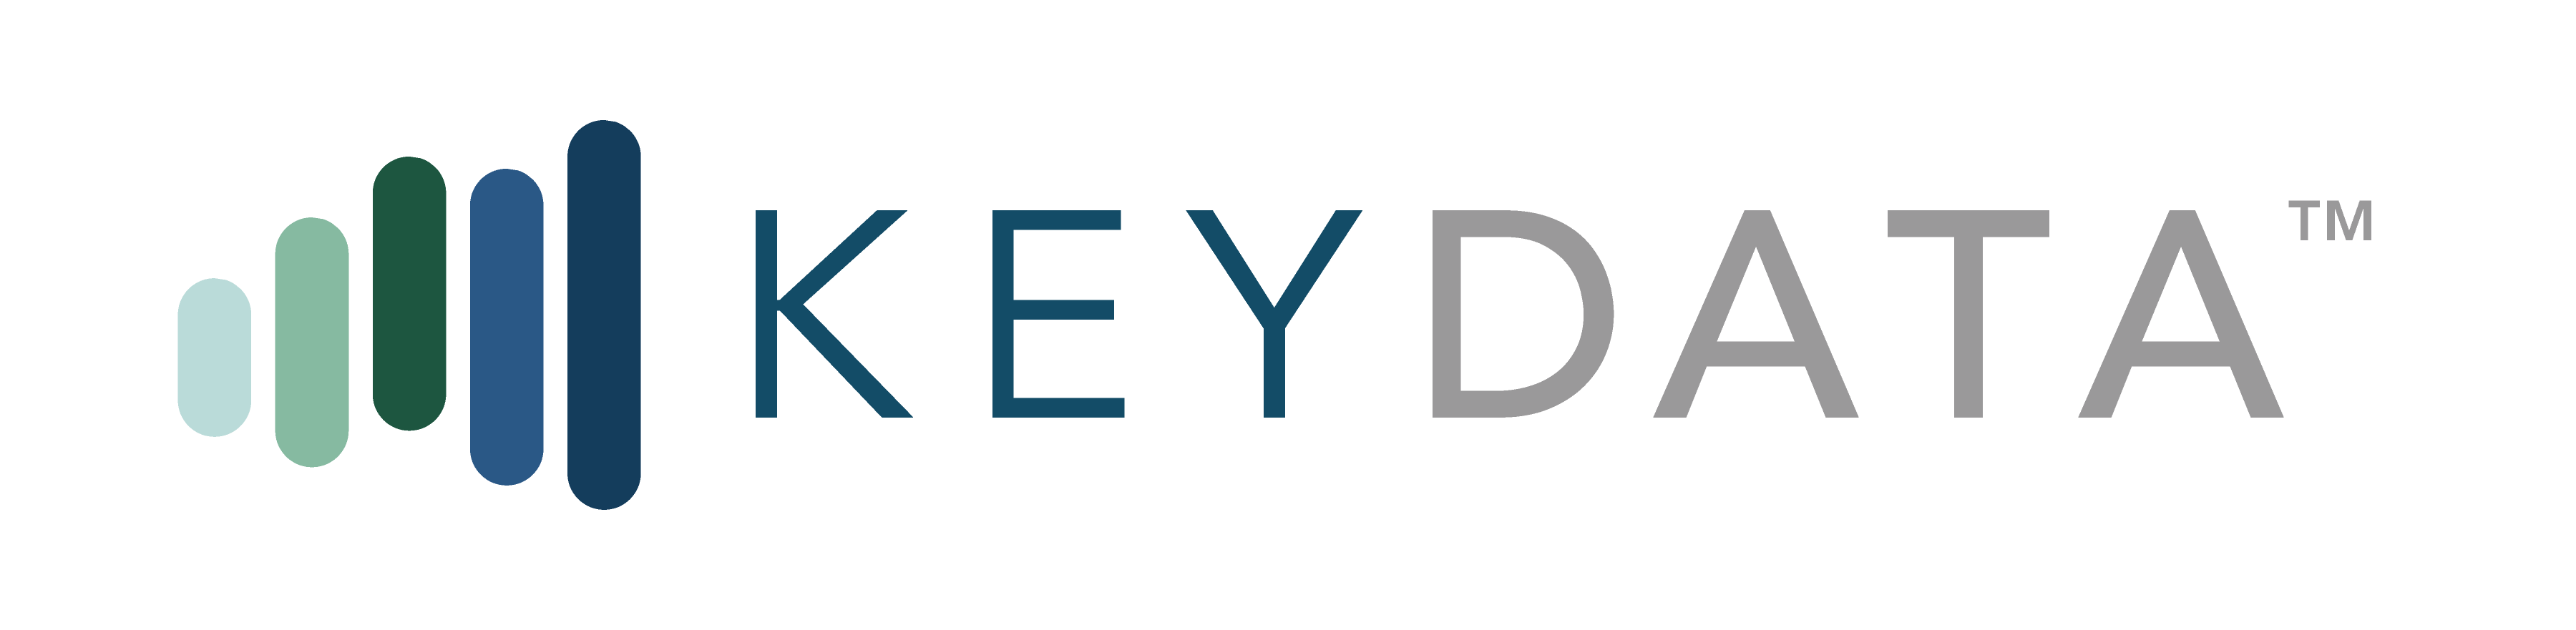 keydata-logo-fullcolor.png